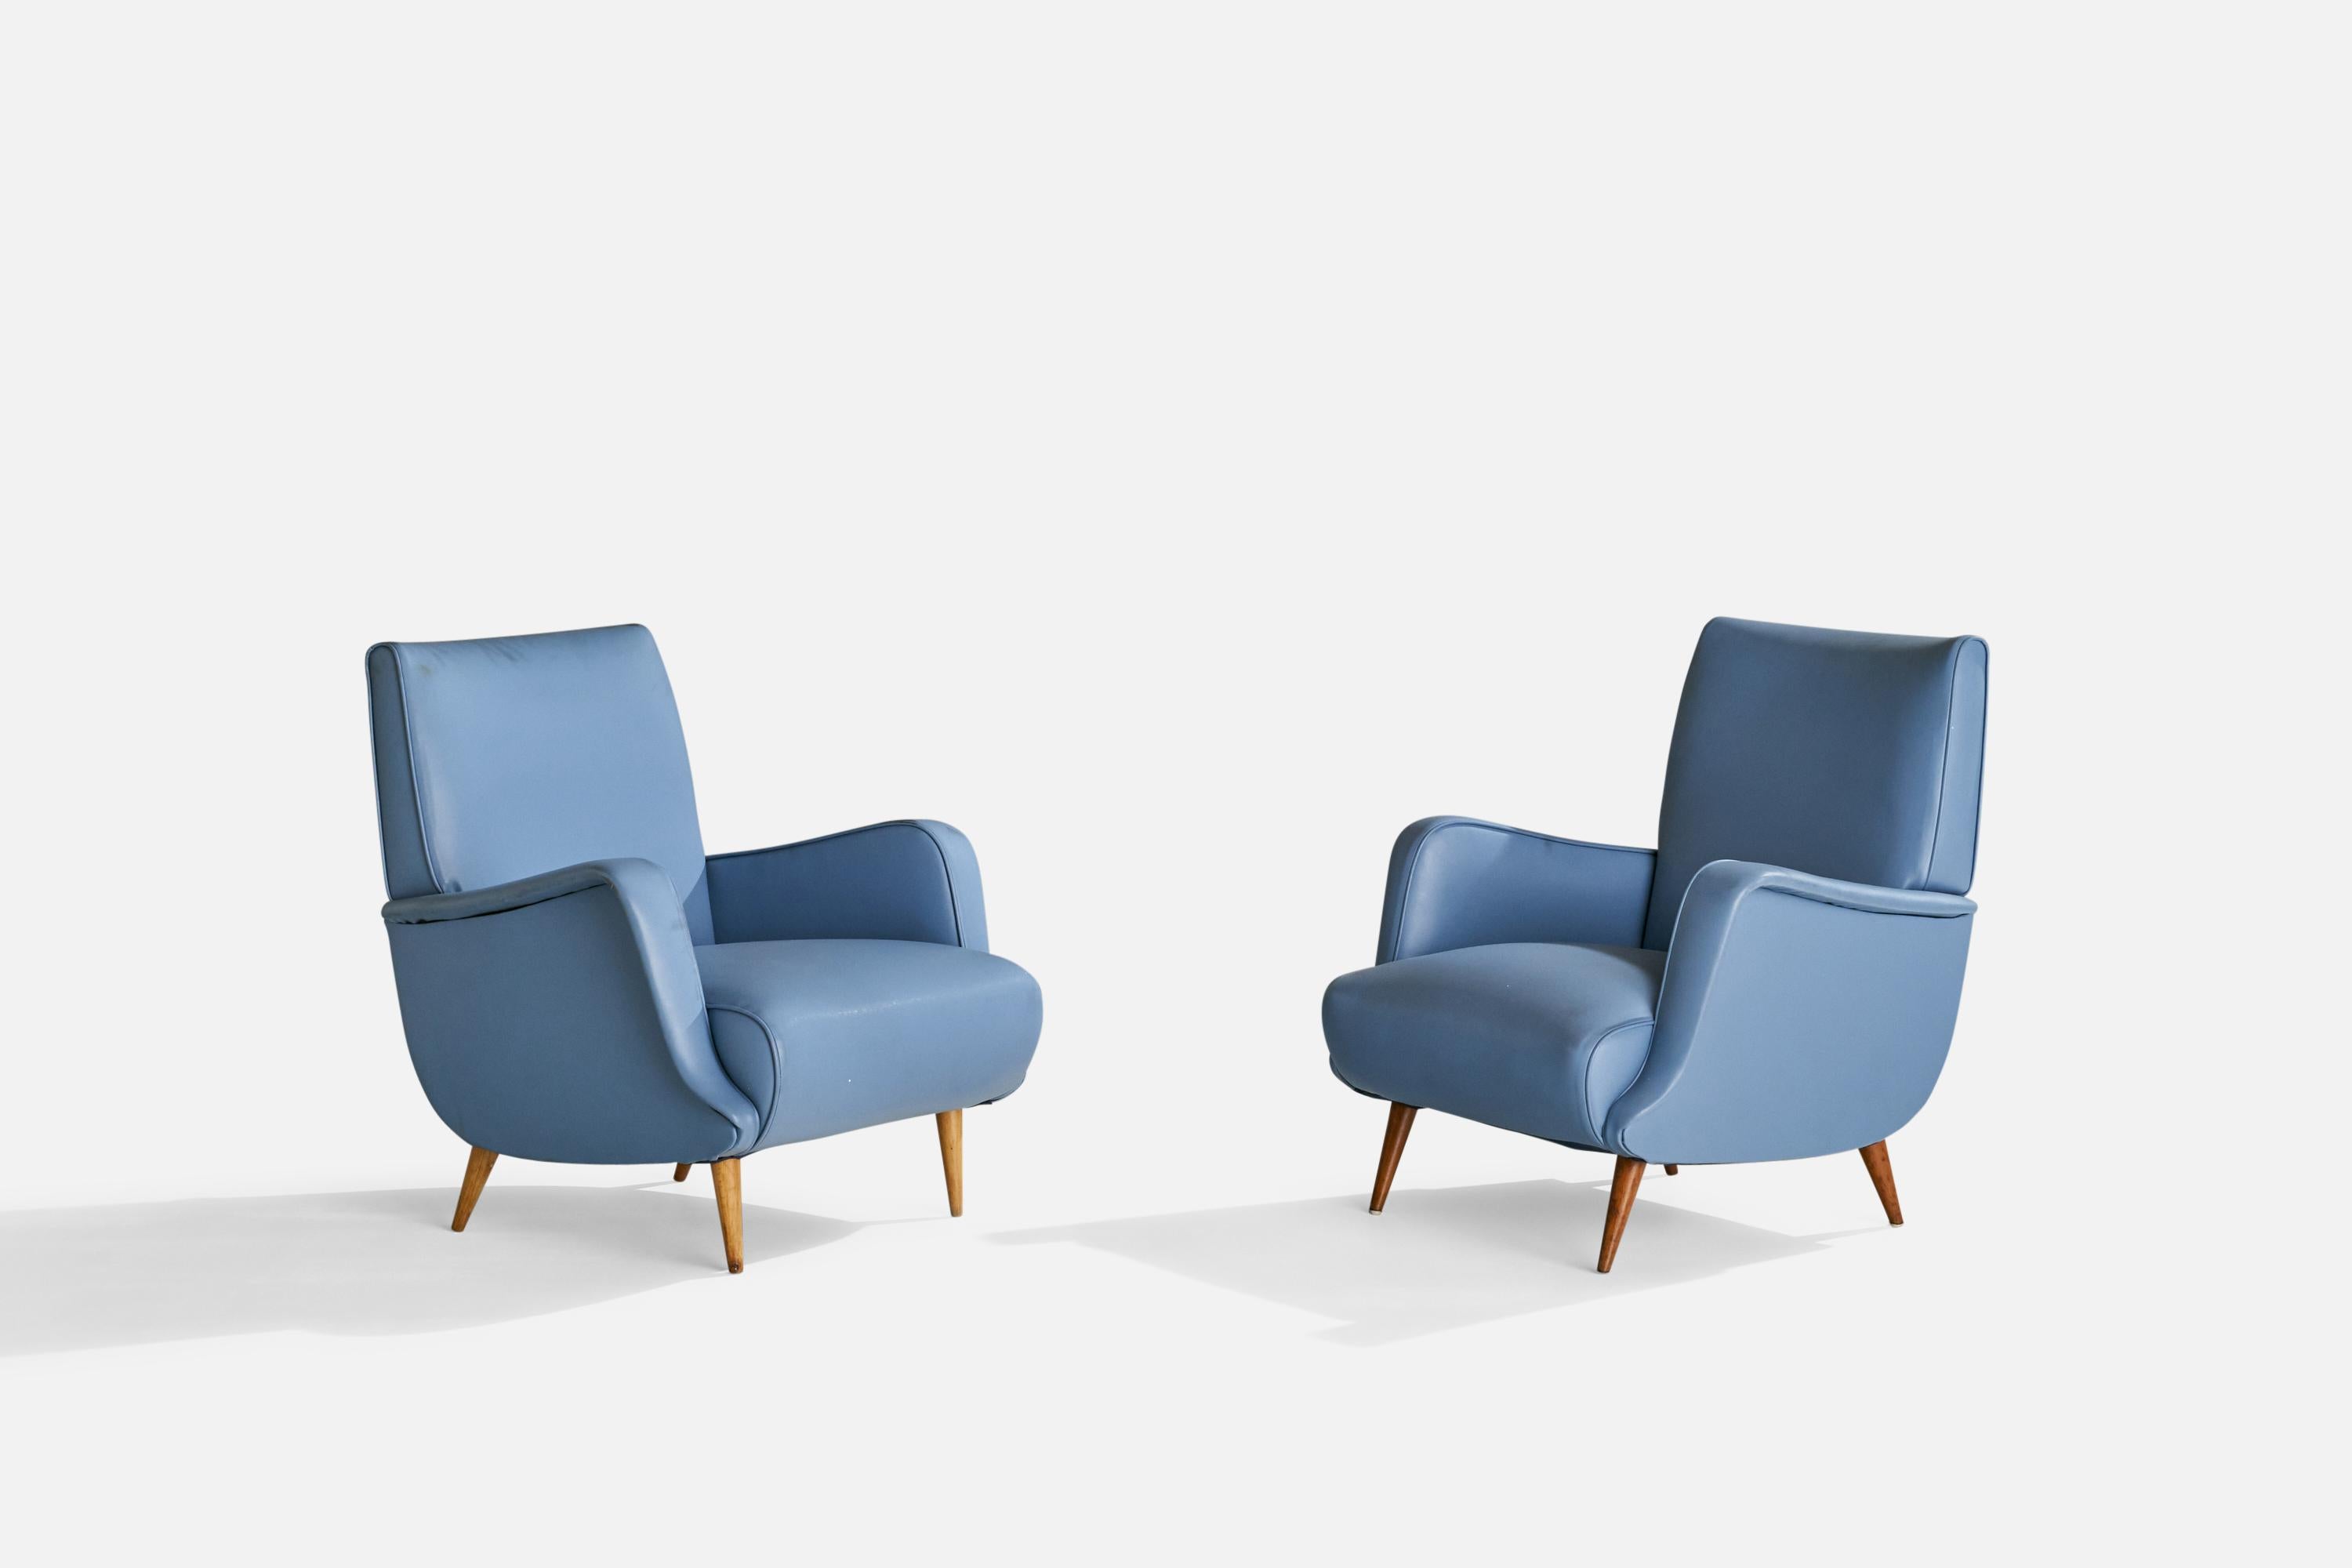 Ein Paar blaue Sessel aus Vinyl und Holz, entworfen von Carlo De Carli, Italien, ca. 1960er Jahre.

Sitzhöhe 15